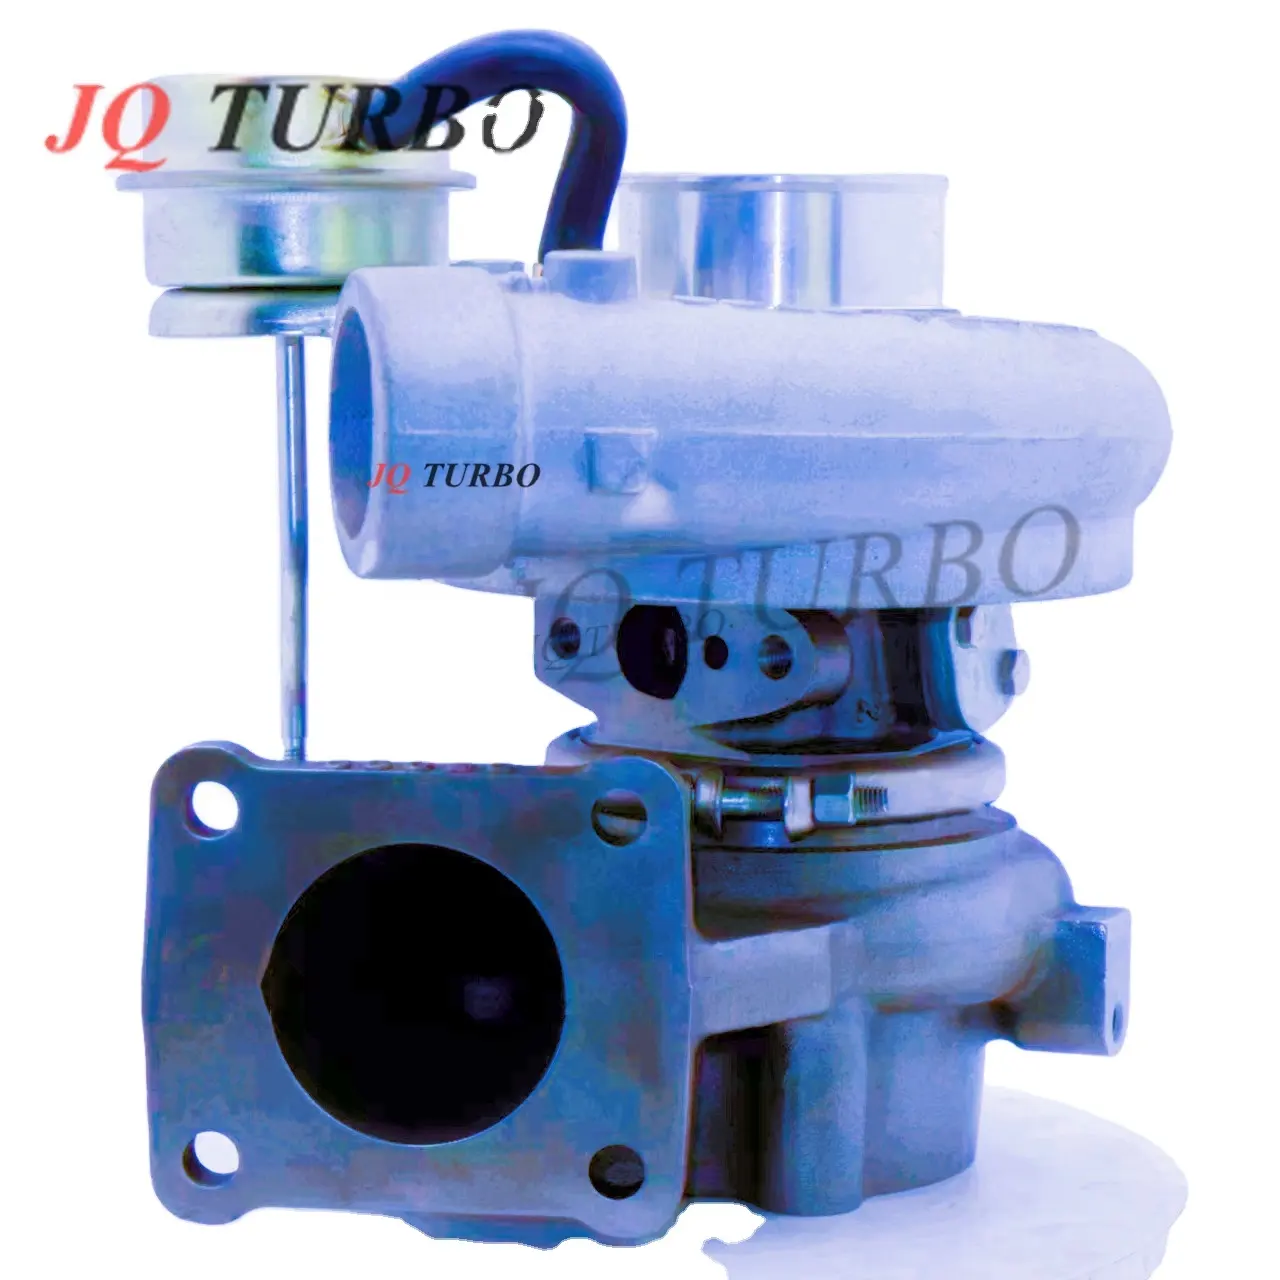 Turbocompressore a buon mercato adatto per Toyota Toyota CT26 morbido 17201-17010 turbocompressori toyota 2c turbo motore diesel